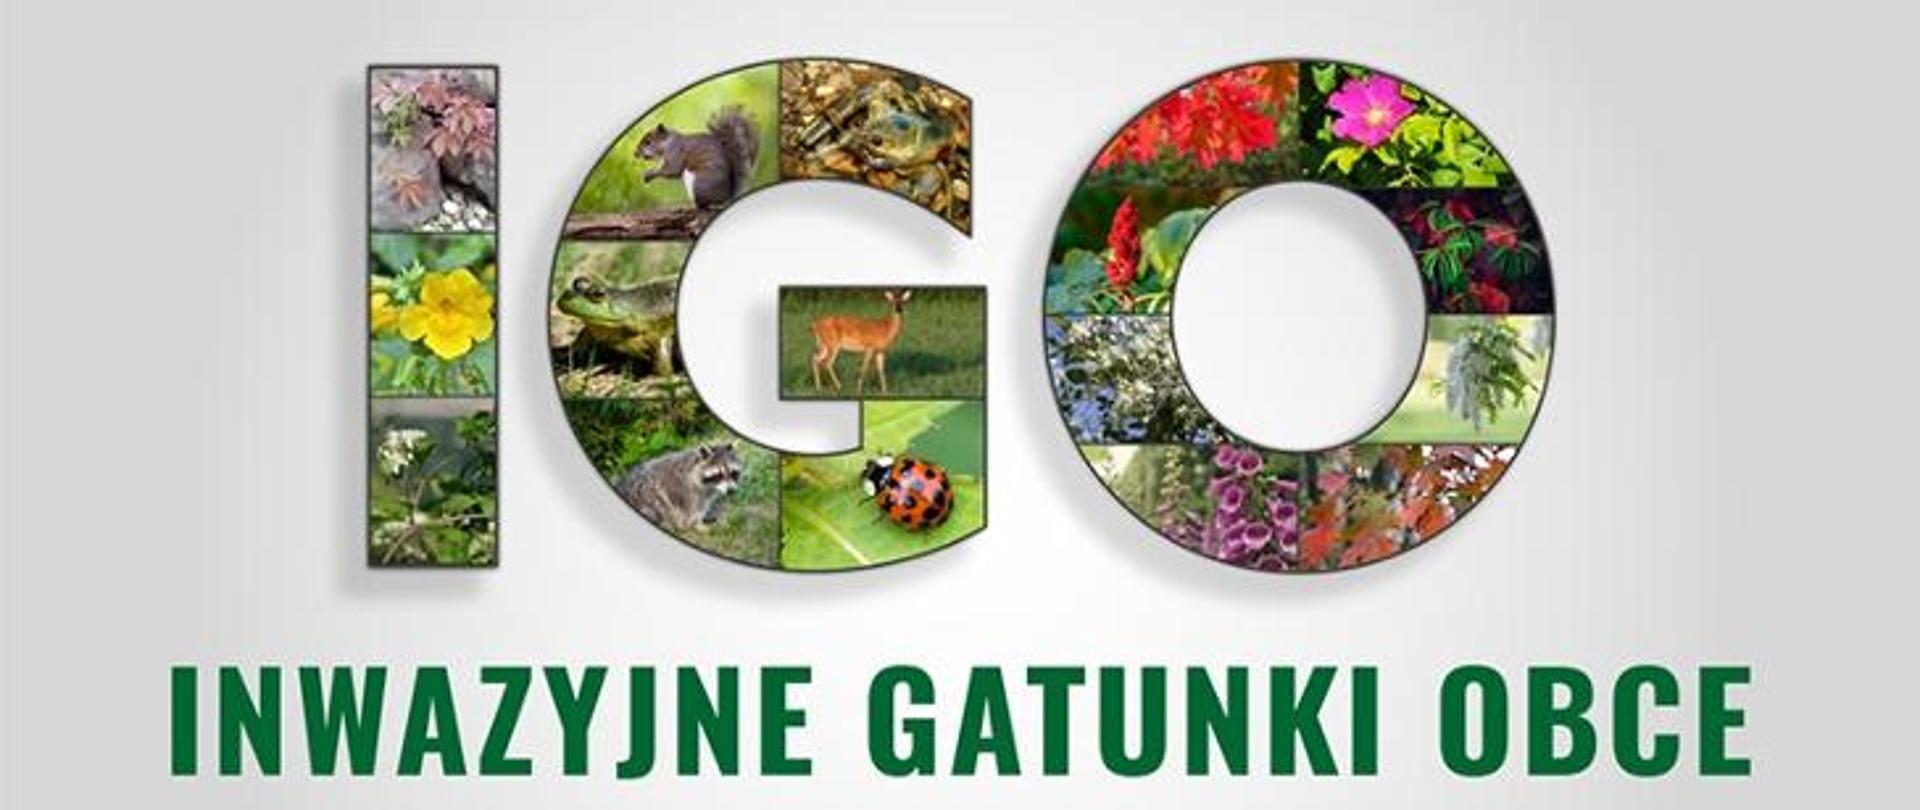 Grafika złożona ze skrótu IGO oraz napisu "Inwazyjne gatunki obce". Litery skrótu zbudowane są ze zdjęć przedstawiających różne gatunki roślin i zwierząt. 